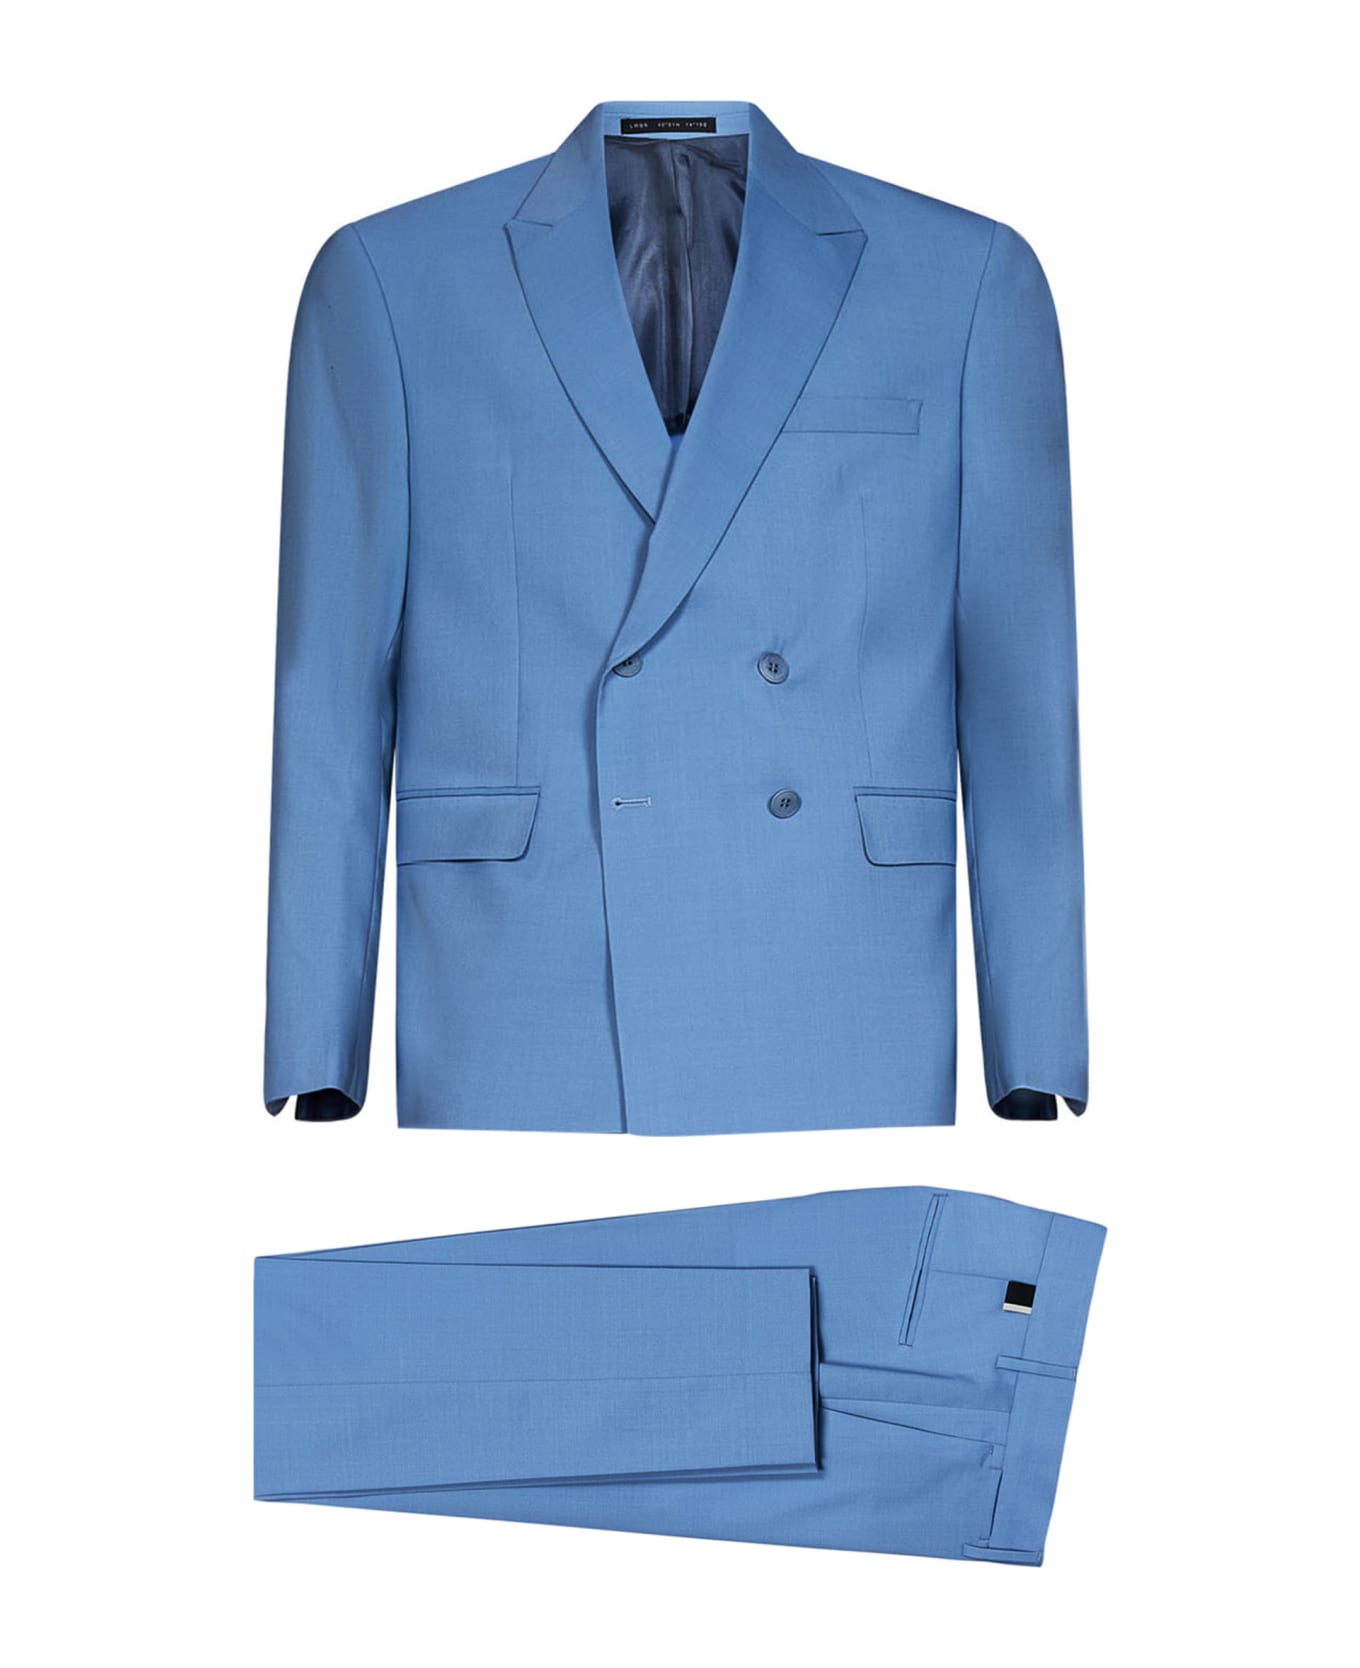 Low Brand Suit - Light blue